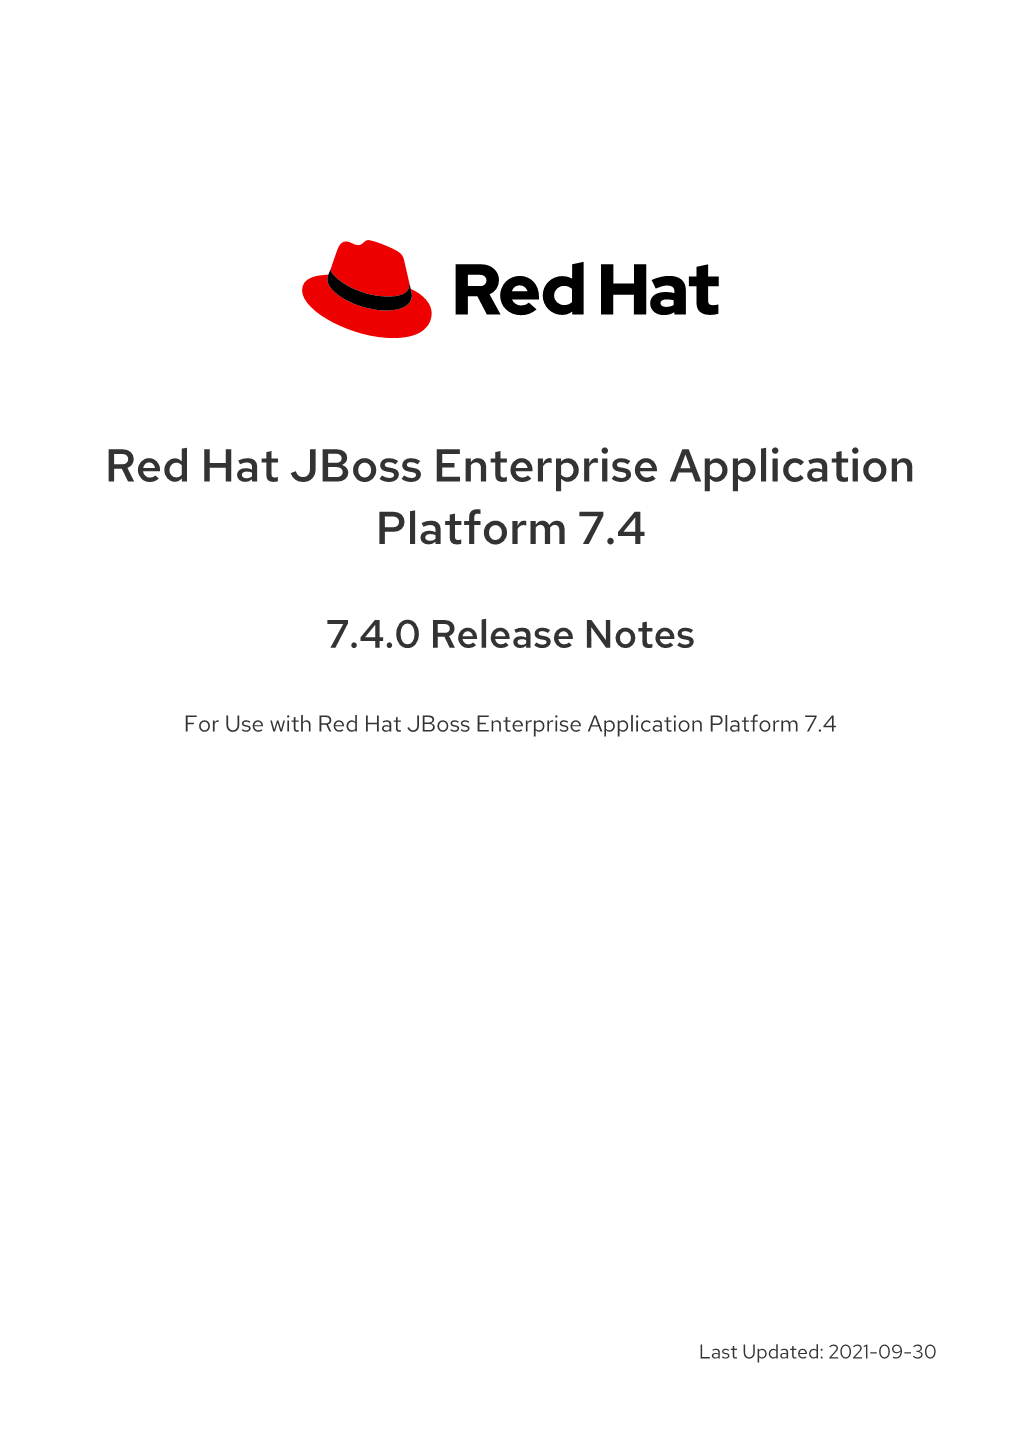 Red Hat Jboss Enterprise Application Platform 7.4 7.4.0 Release Notes